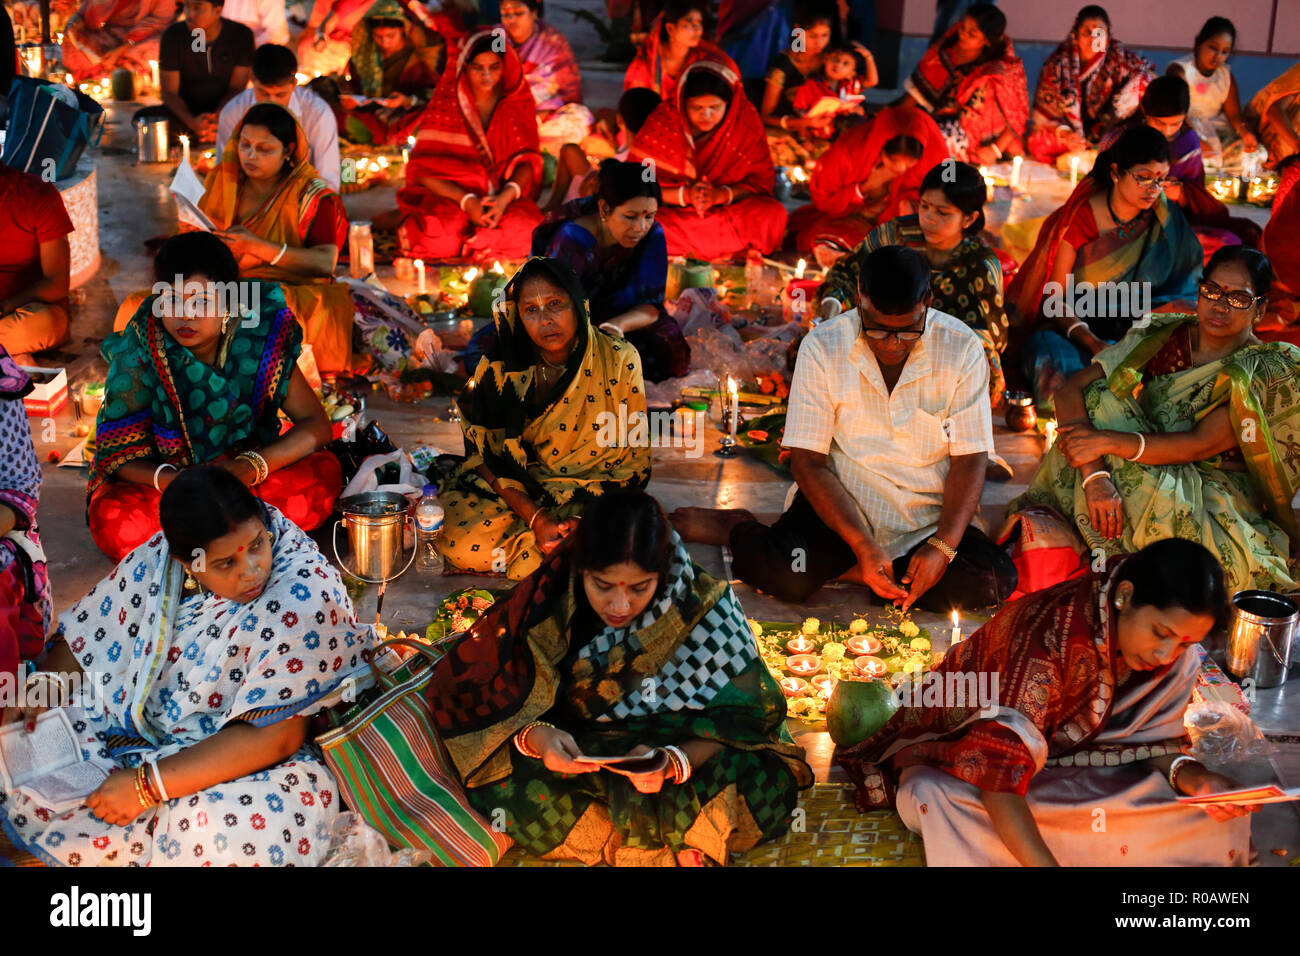 Loknath dévots allument des lampes et brûler d'encens tout en accomplissant des rituels à l'Ashram de Loknath Swamibag de Dacca. Au cours des 15 derniers jours de l'être Banque D'Images